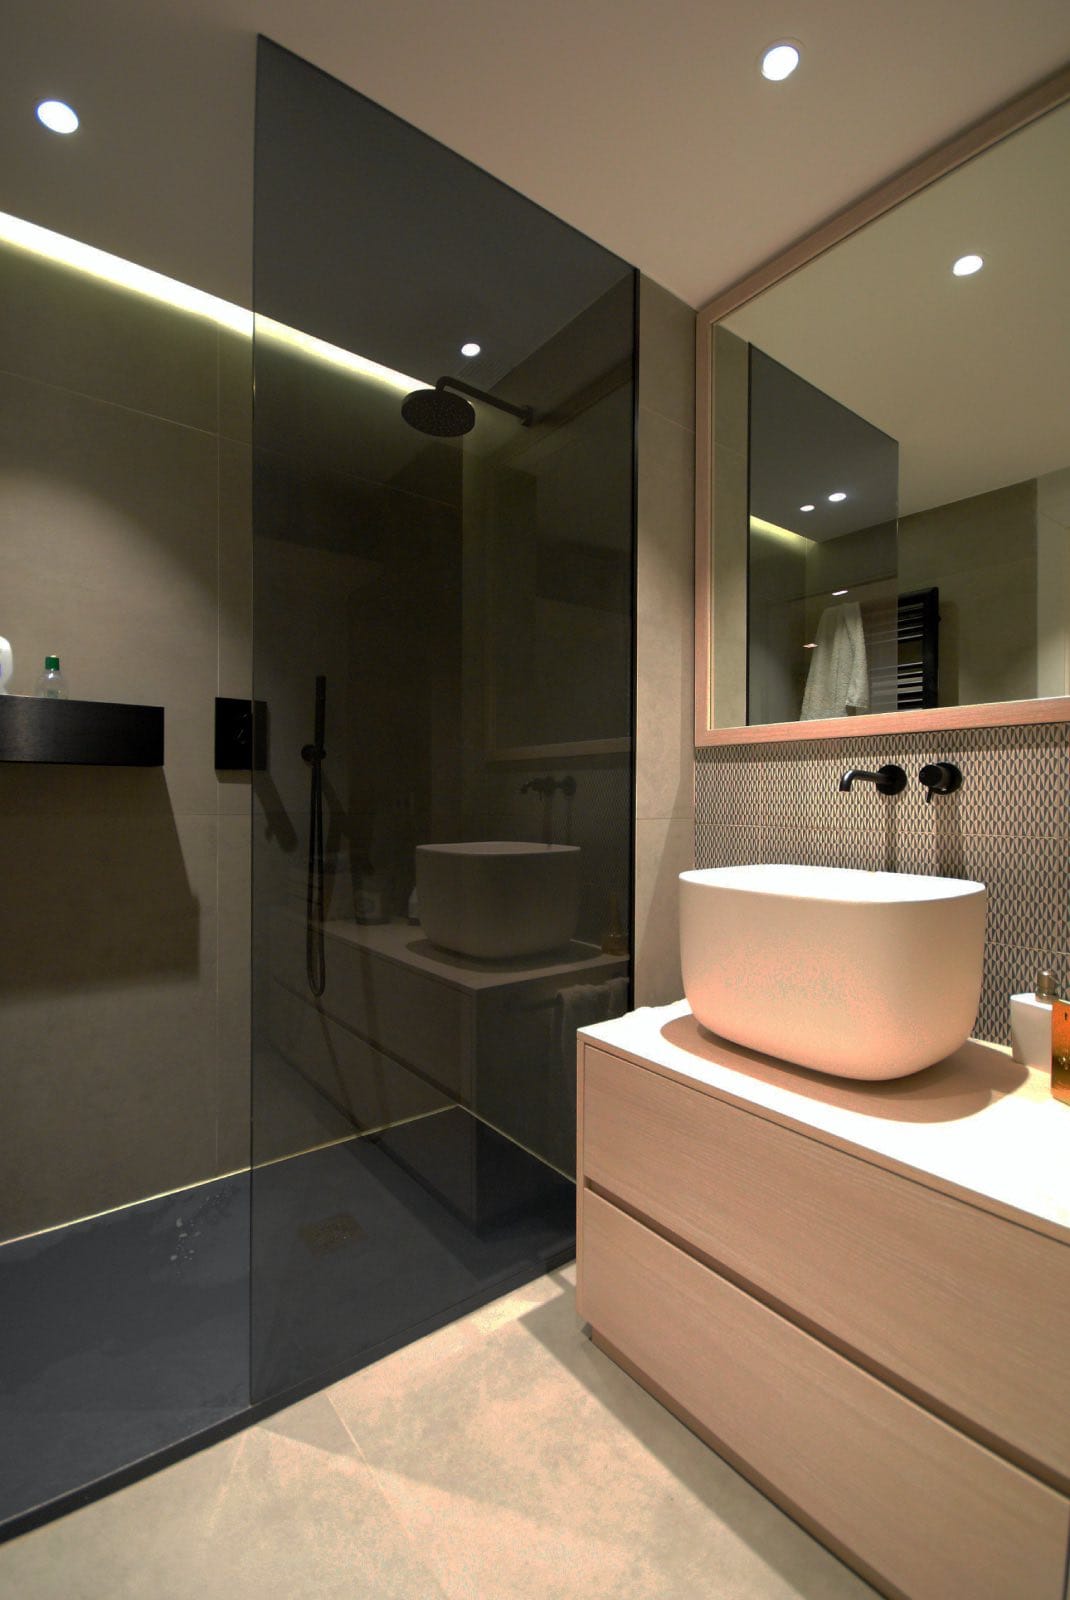 Estantería ducha moderno cuarto de baño negro mate Accesorios